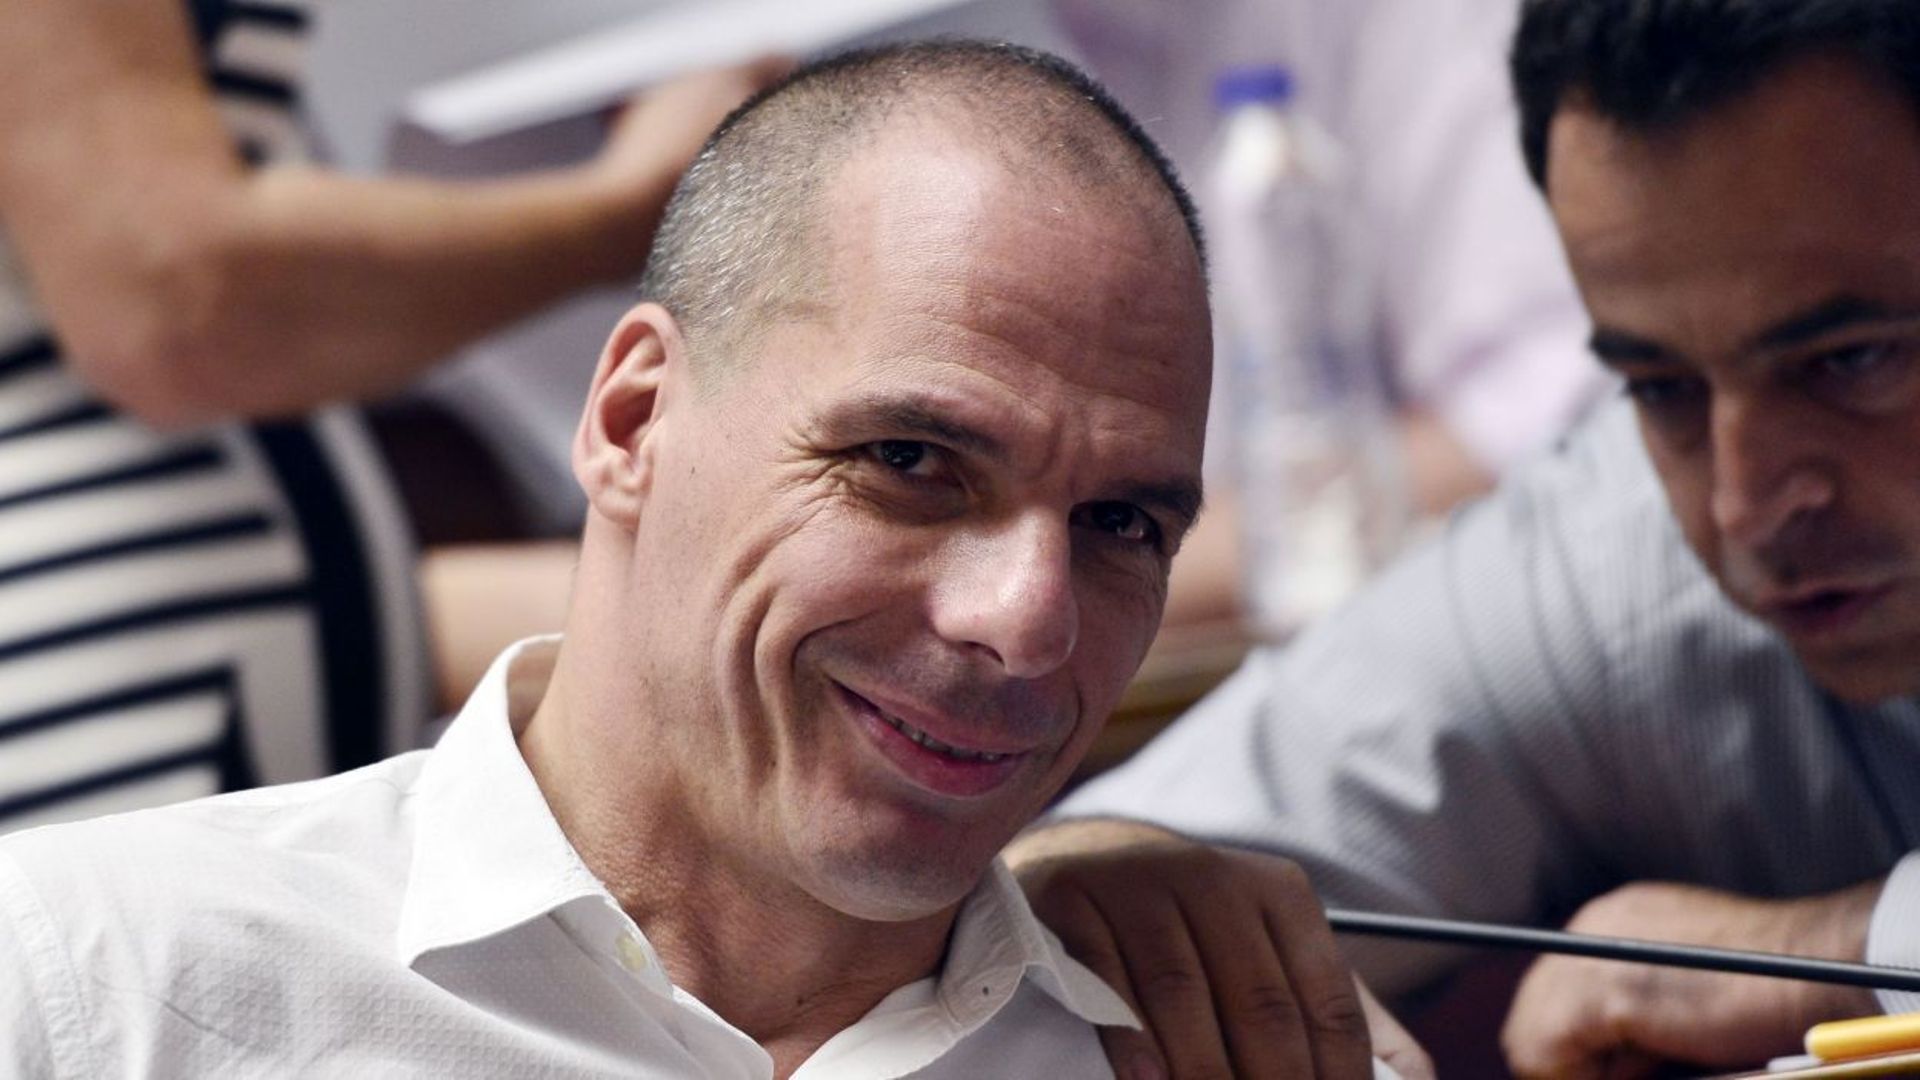 Grèce: le plan d'aide "ne marchera pas", selon l'ex-ministre Varoufakis